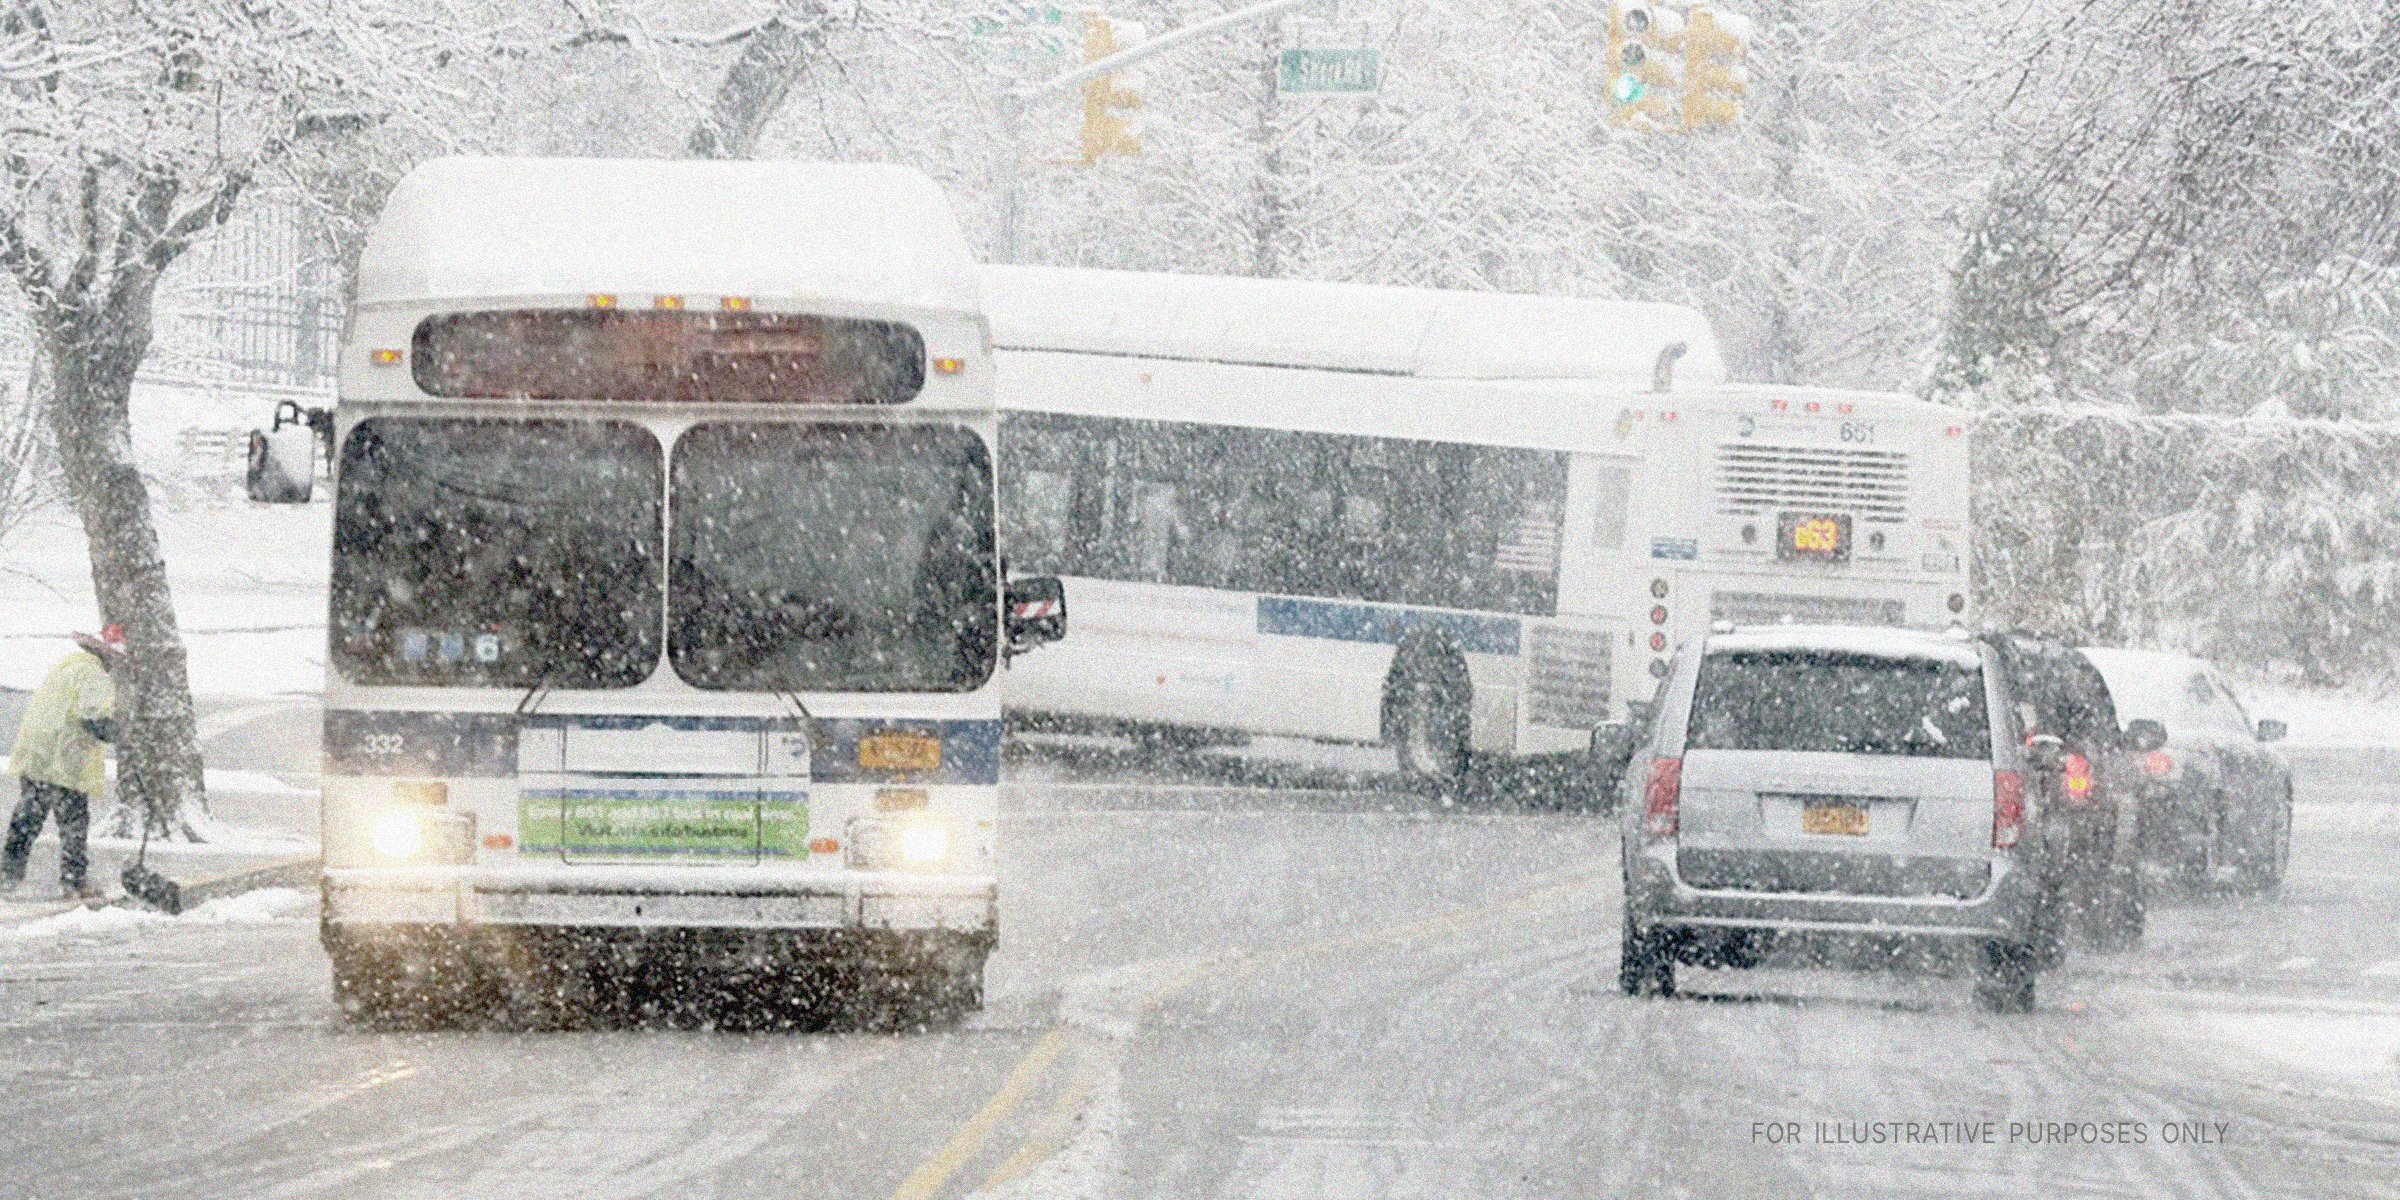 Autobús y automóviles en un día de nieve | Fuente: Flickr.com/MTAPhotos (CC BY 2.0)